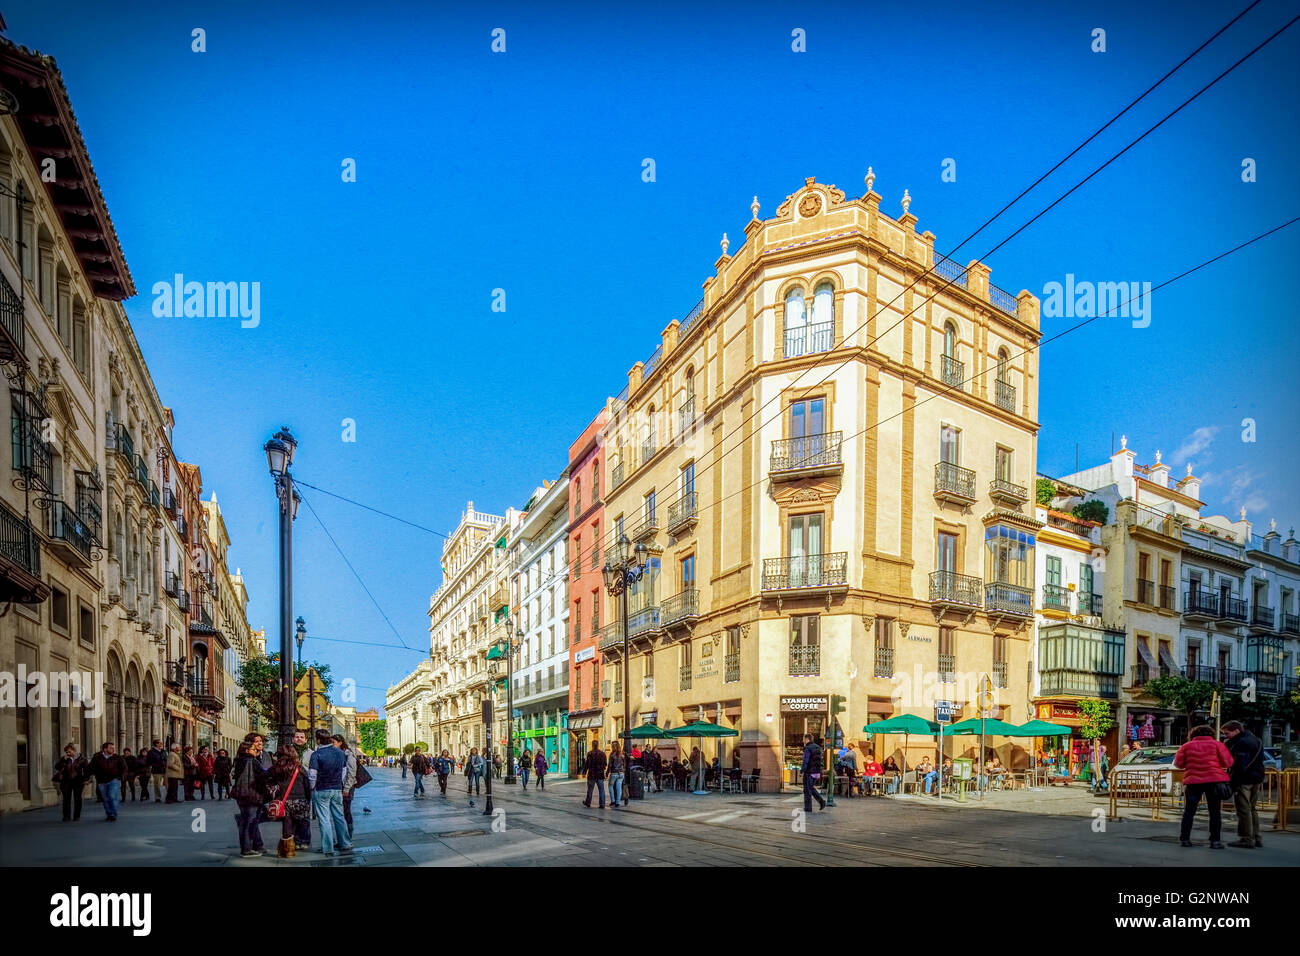 Avenida de la Constitucion (sinistra) e Alemanes (destra) angolo di strada, Siviglia, Spagna Foto Stock